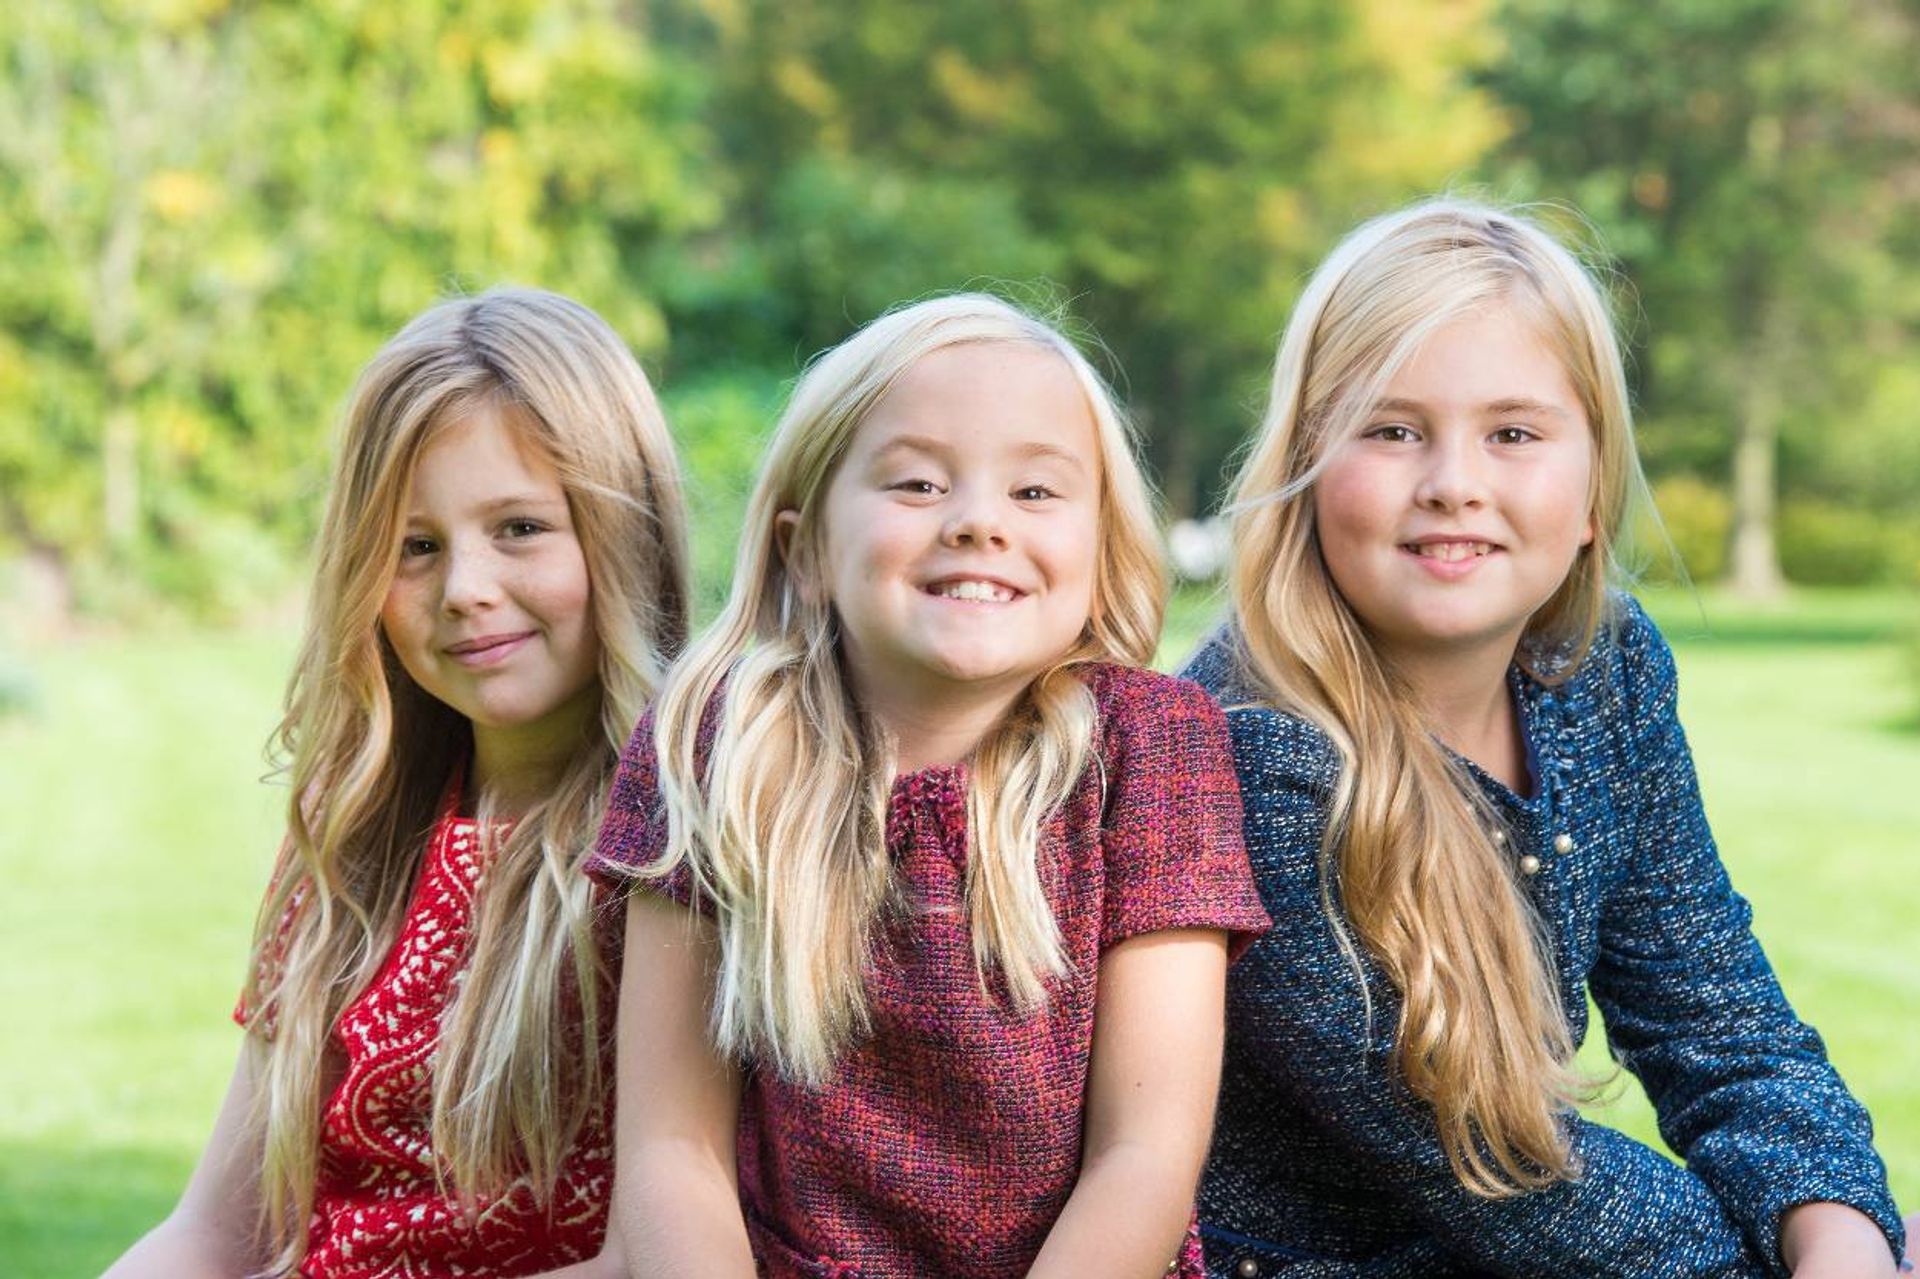 Regan Gezag Laatste Fotoserie: de drie Nederlandse prinsessen door de jaren - EO